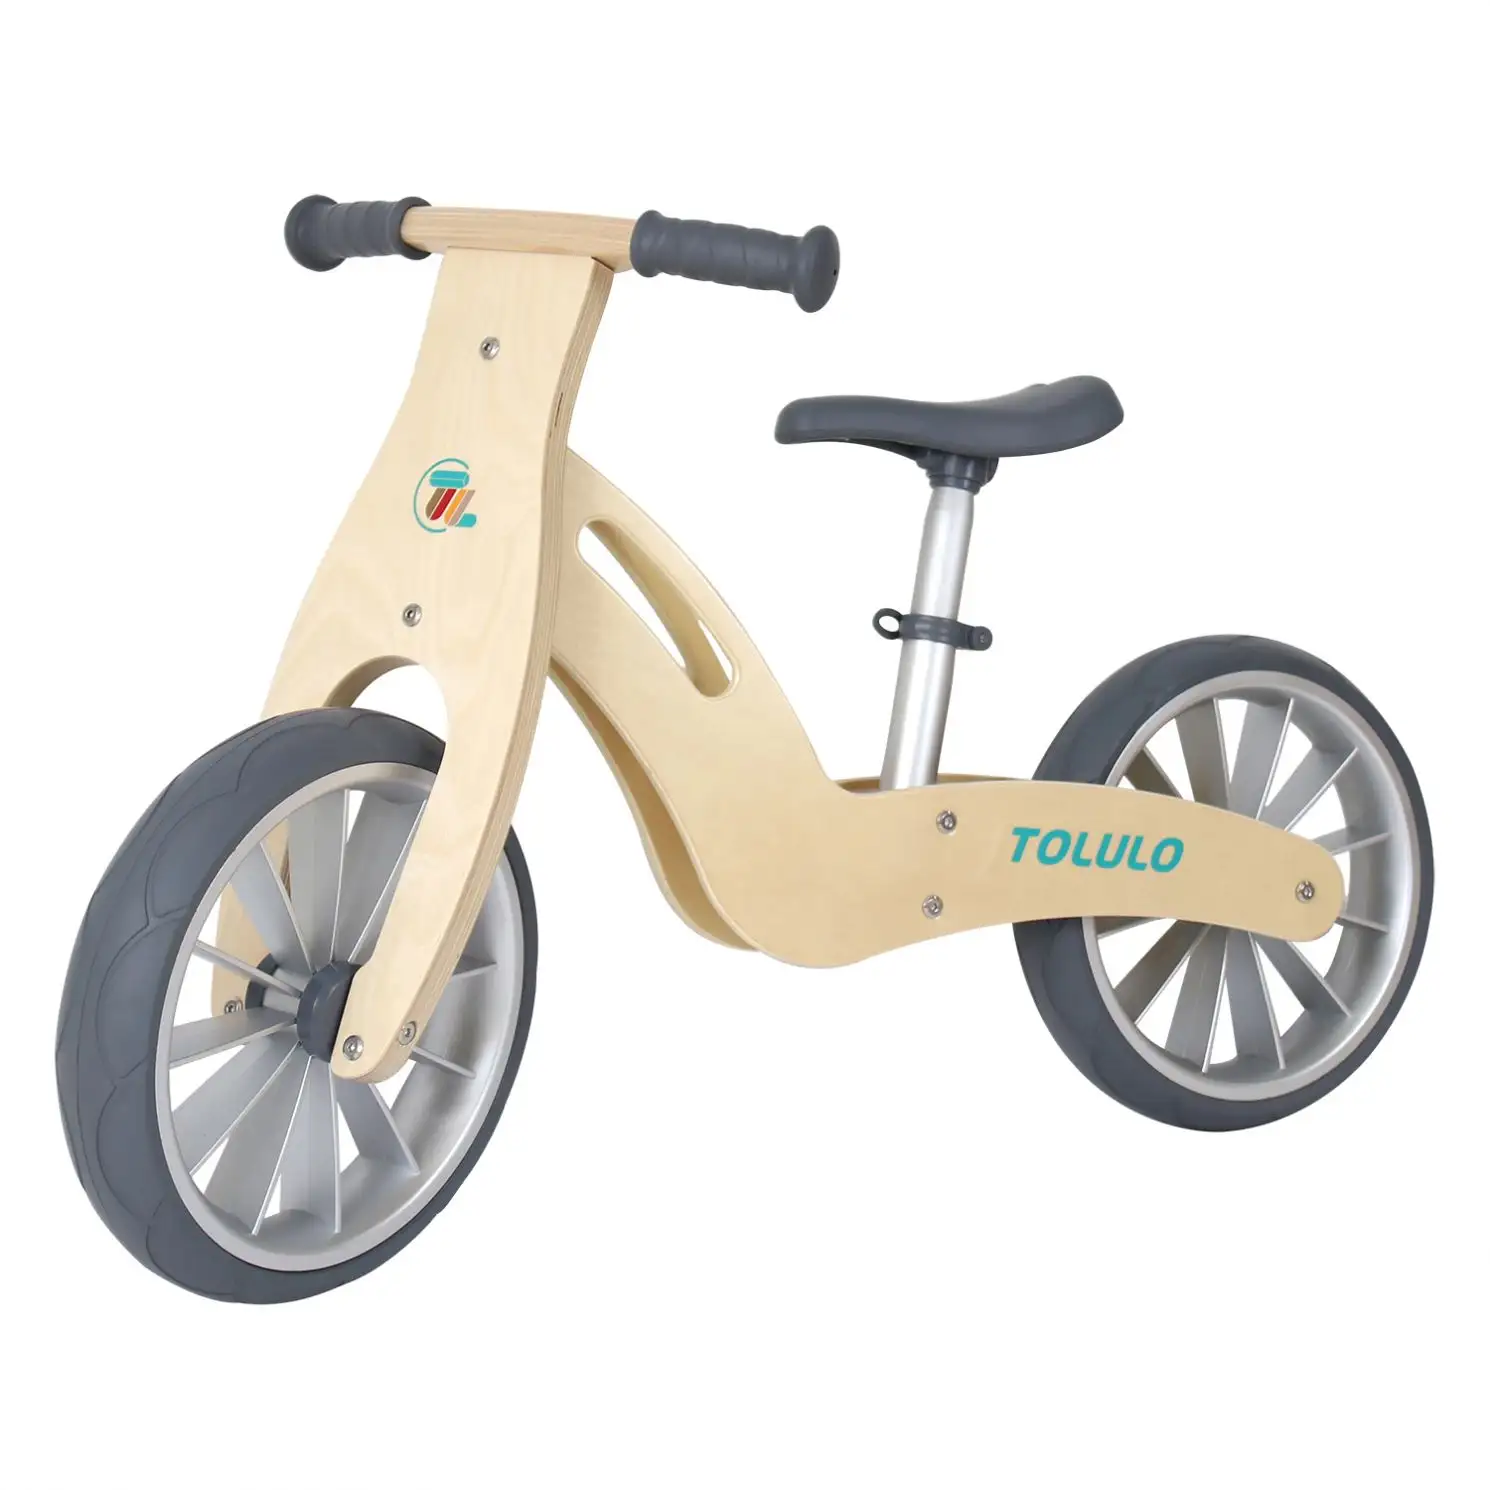 Bicicleta barata para niños, sin pedales, bicicleta clásica de equilibrio para niños, bicicleta de equilibrio con marco de madera para niños